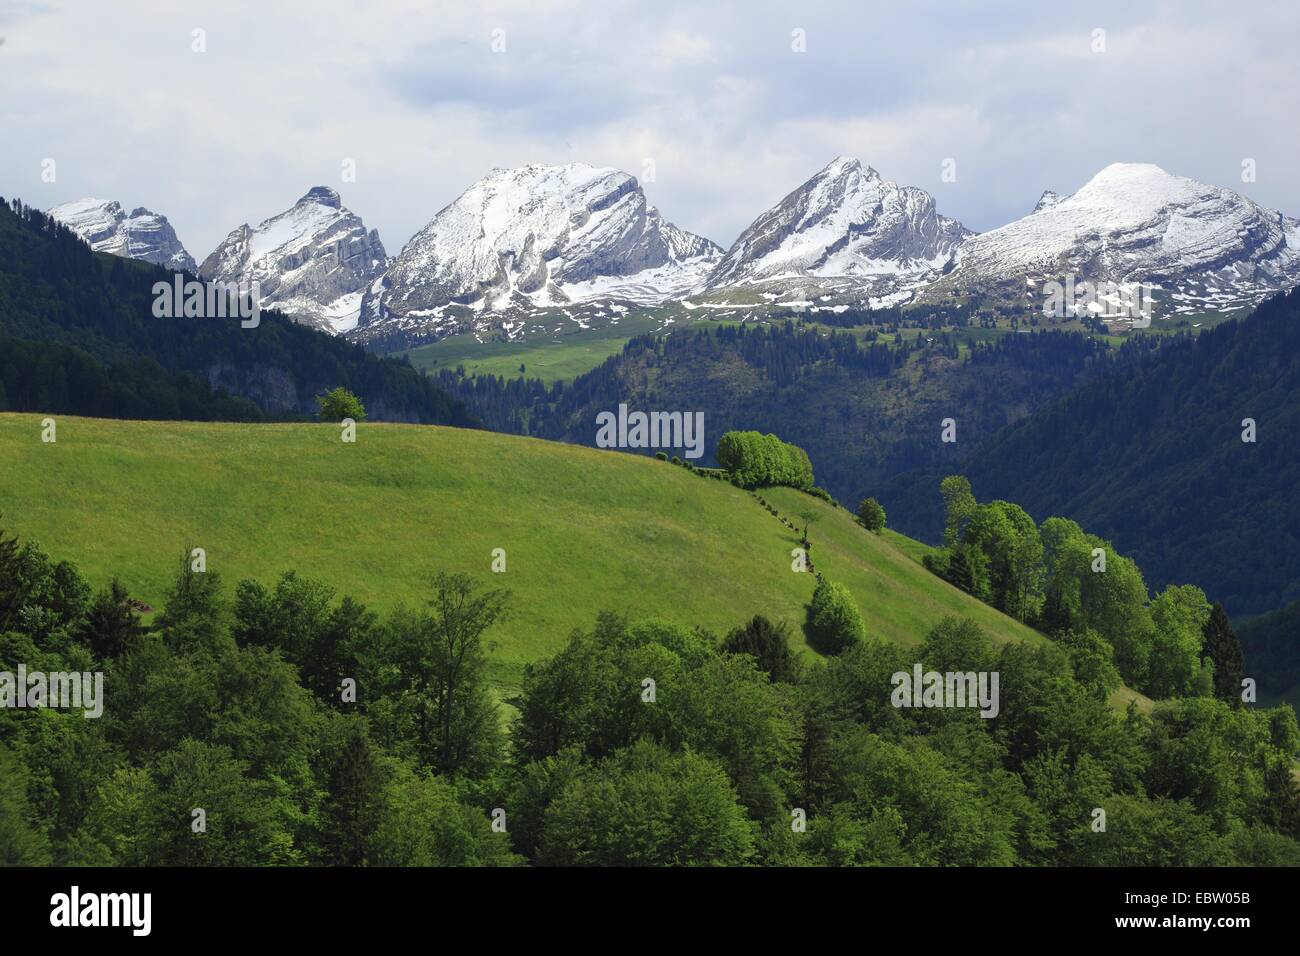 La chaîne de montagnes de Churfirsten les Alpes, Suisse Appenzell, Saint-Gall, Toggenburg Banque D'Images